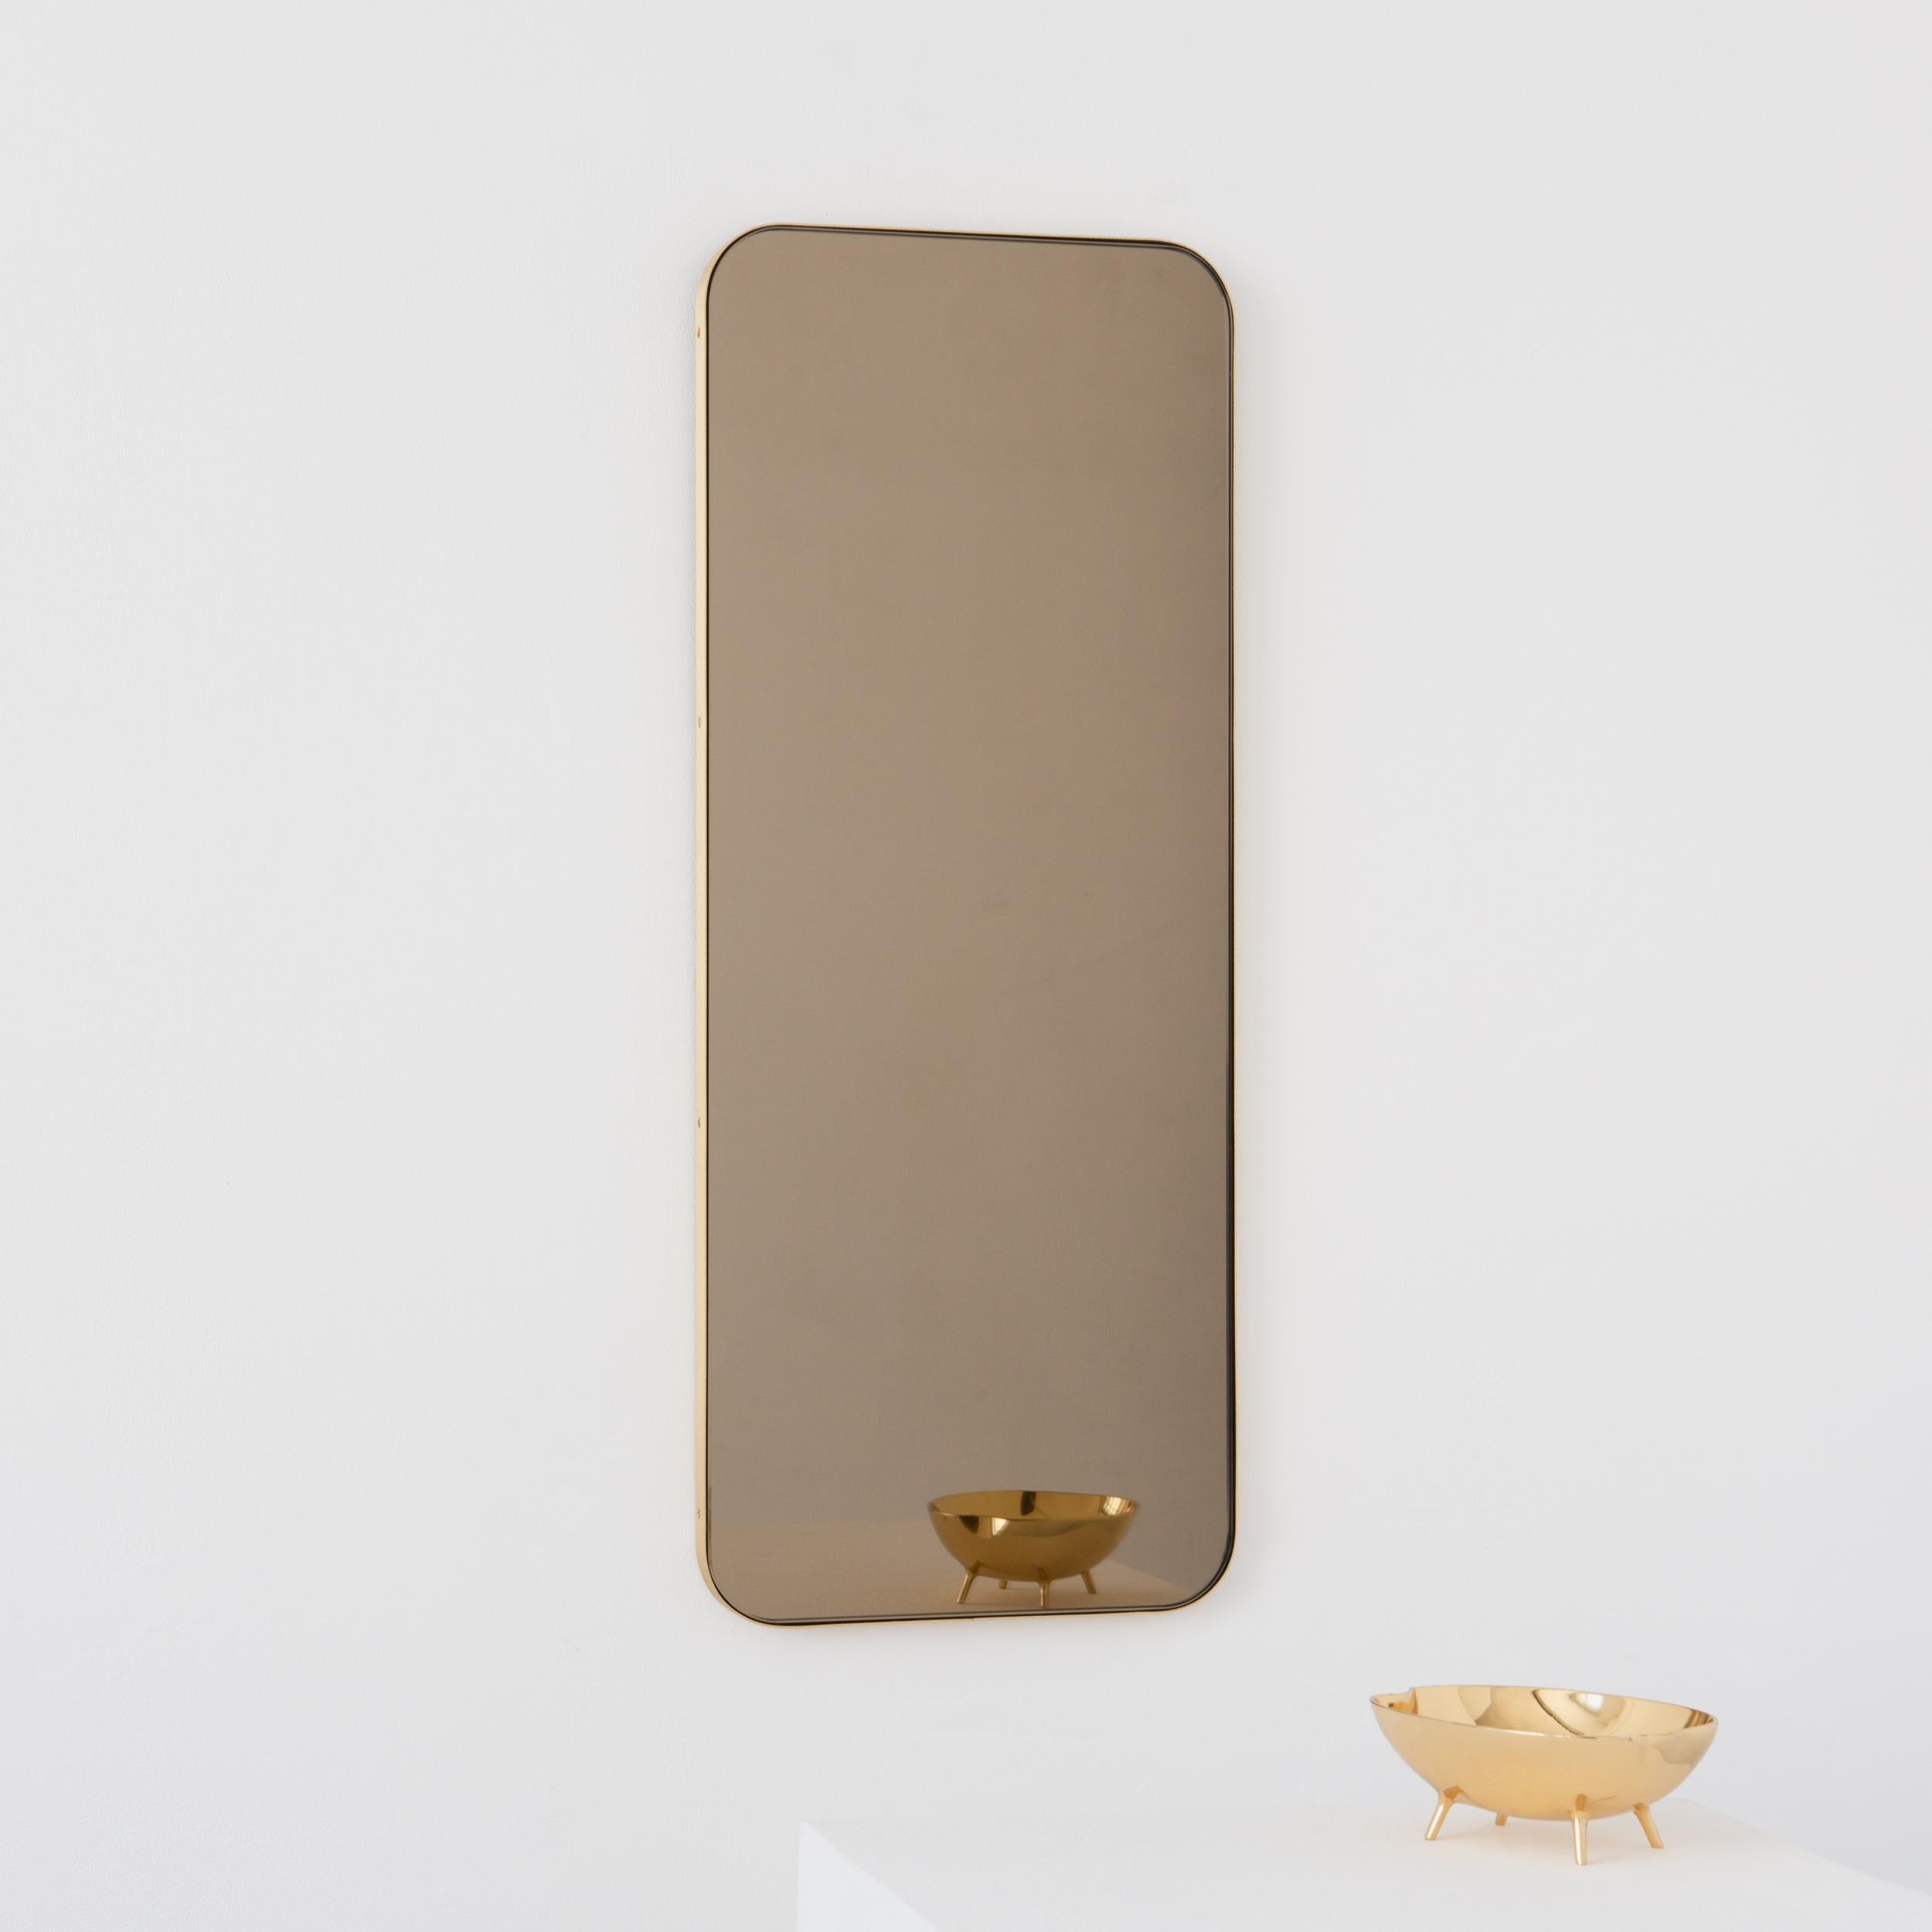 Moderner, bronzefarben getönter, rechteckiger Spiegel mit einem eleganten Rahmen aus gebürstetem Messing. Teil der charmanten Quadris Kollektion, entworfen und handgefertigt in London, UK. 

Die mittelgroßen, großen und extragroßen Spiegel (37 cm x